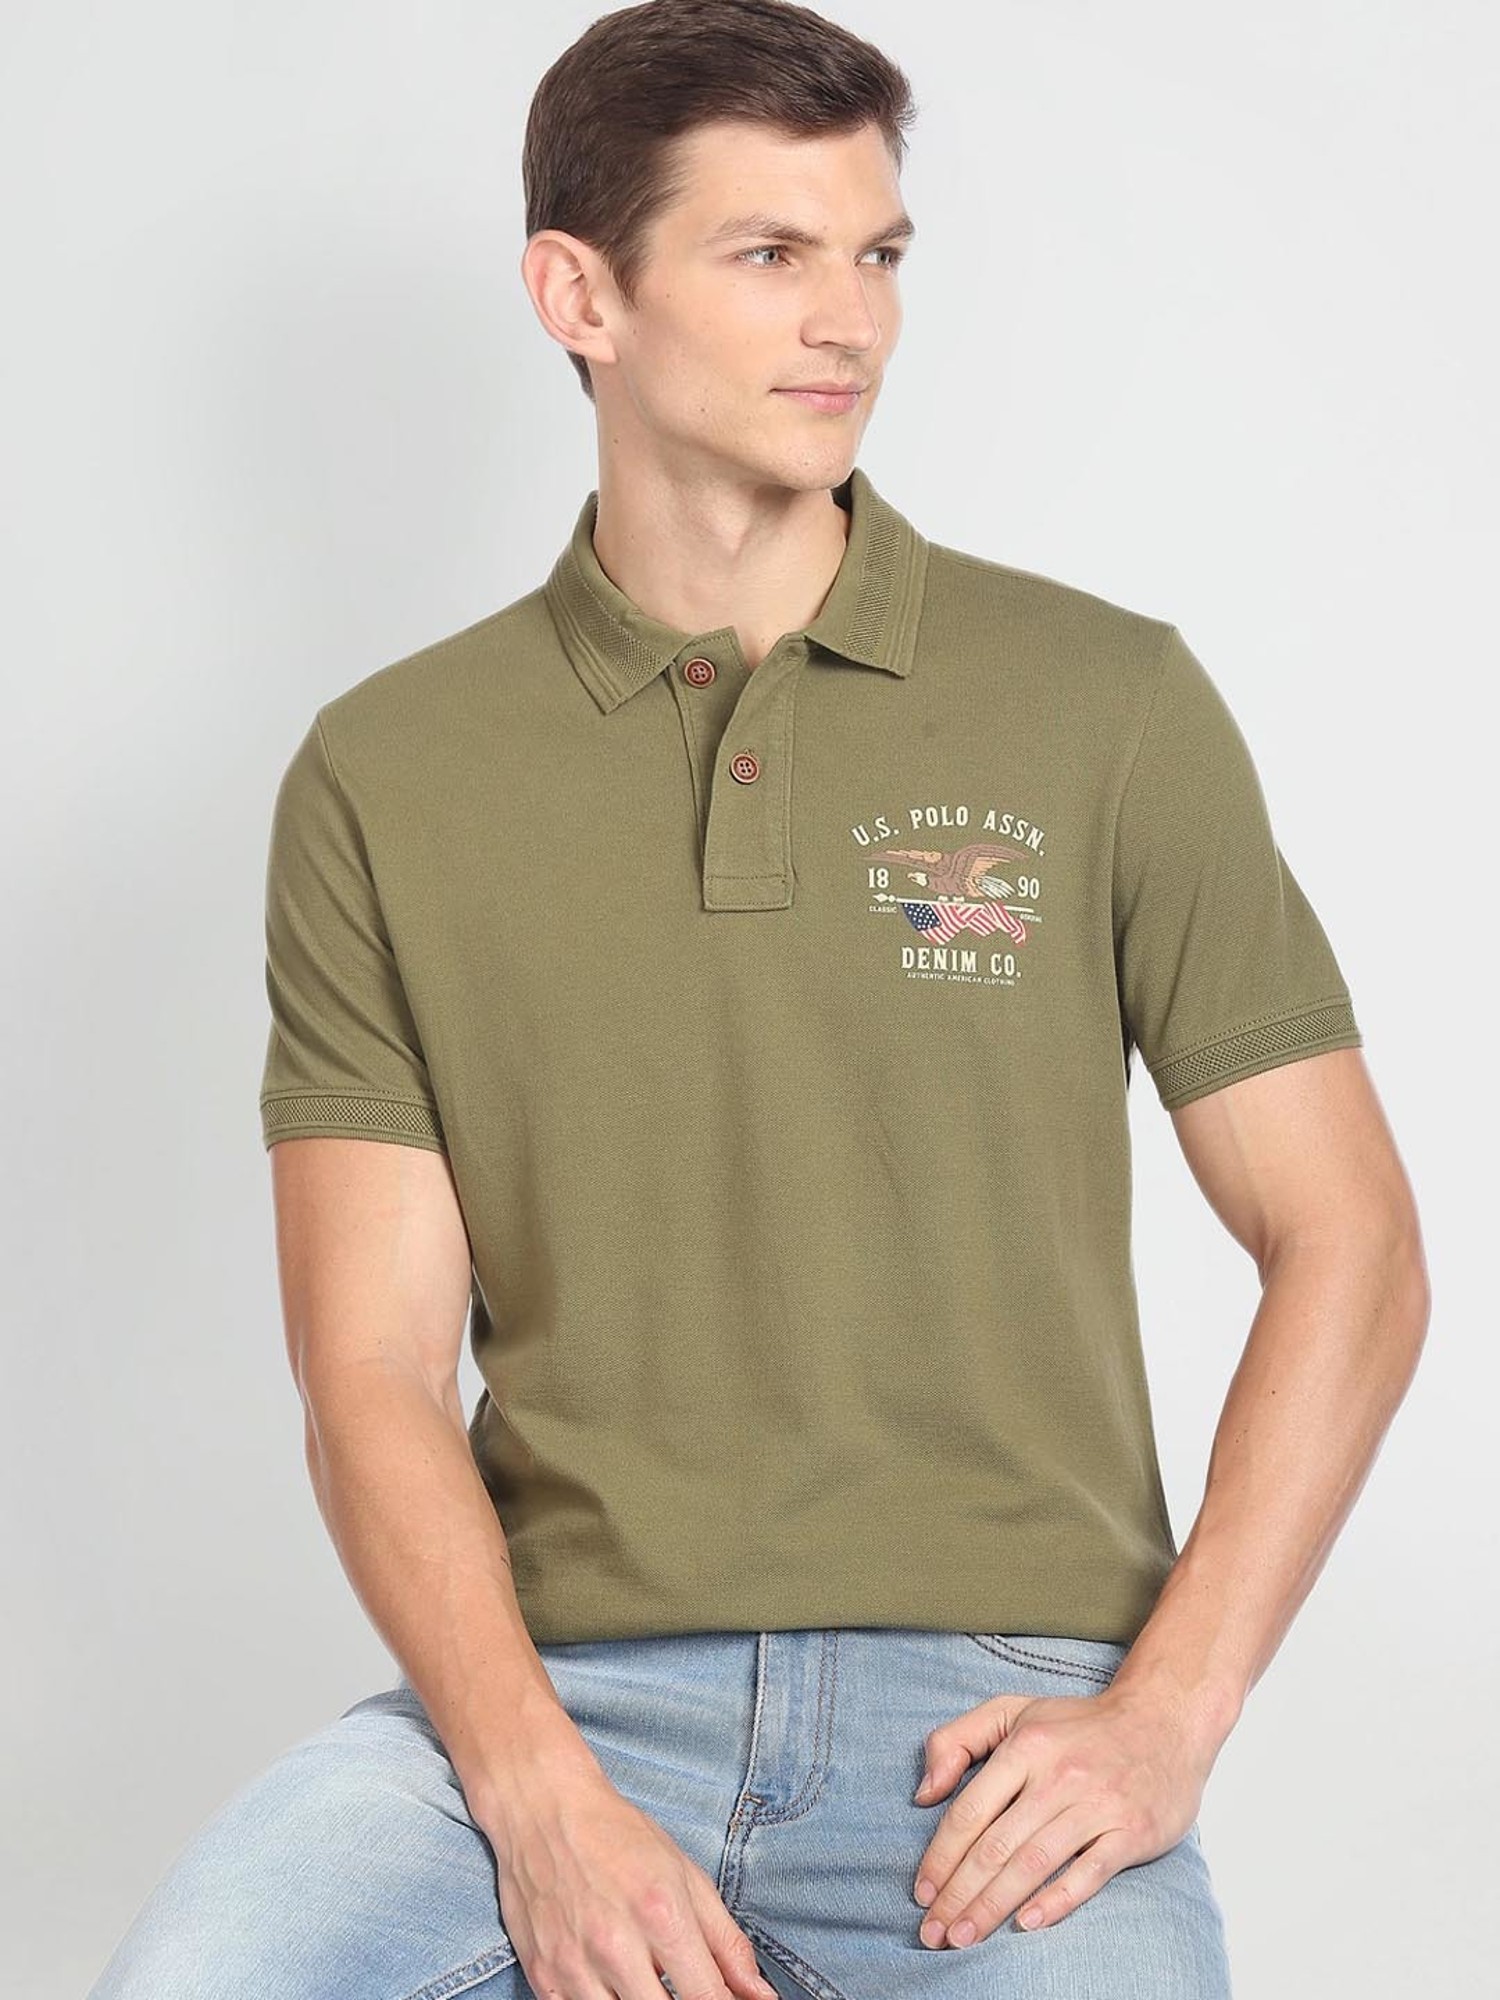 Buy U.S. Polo Assn. Denim Co. Printed Short Sleeve Polo Shirt - NNNOW.com